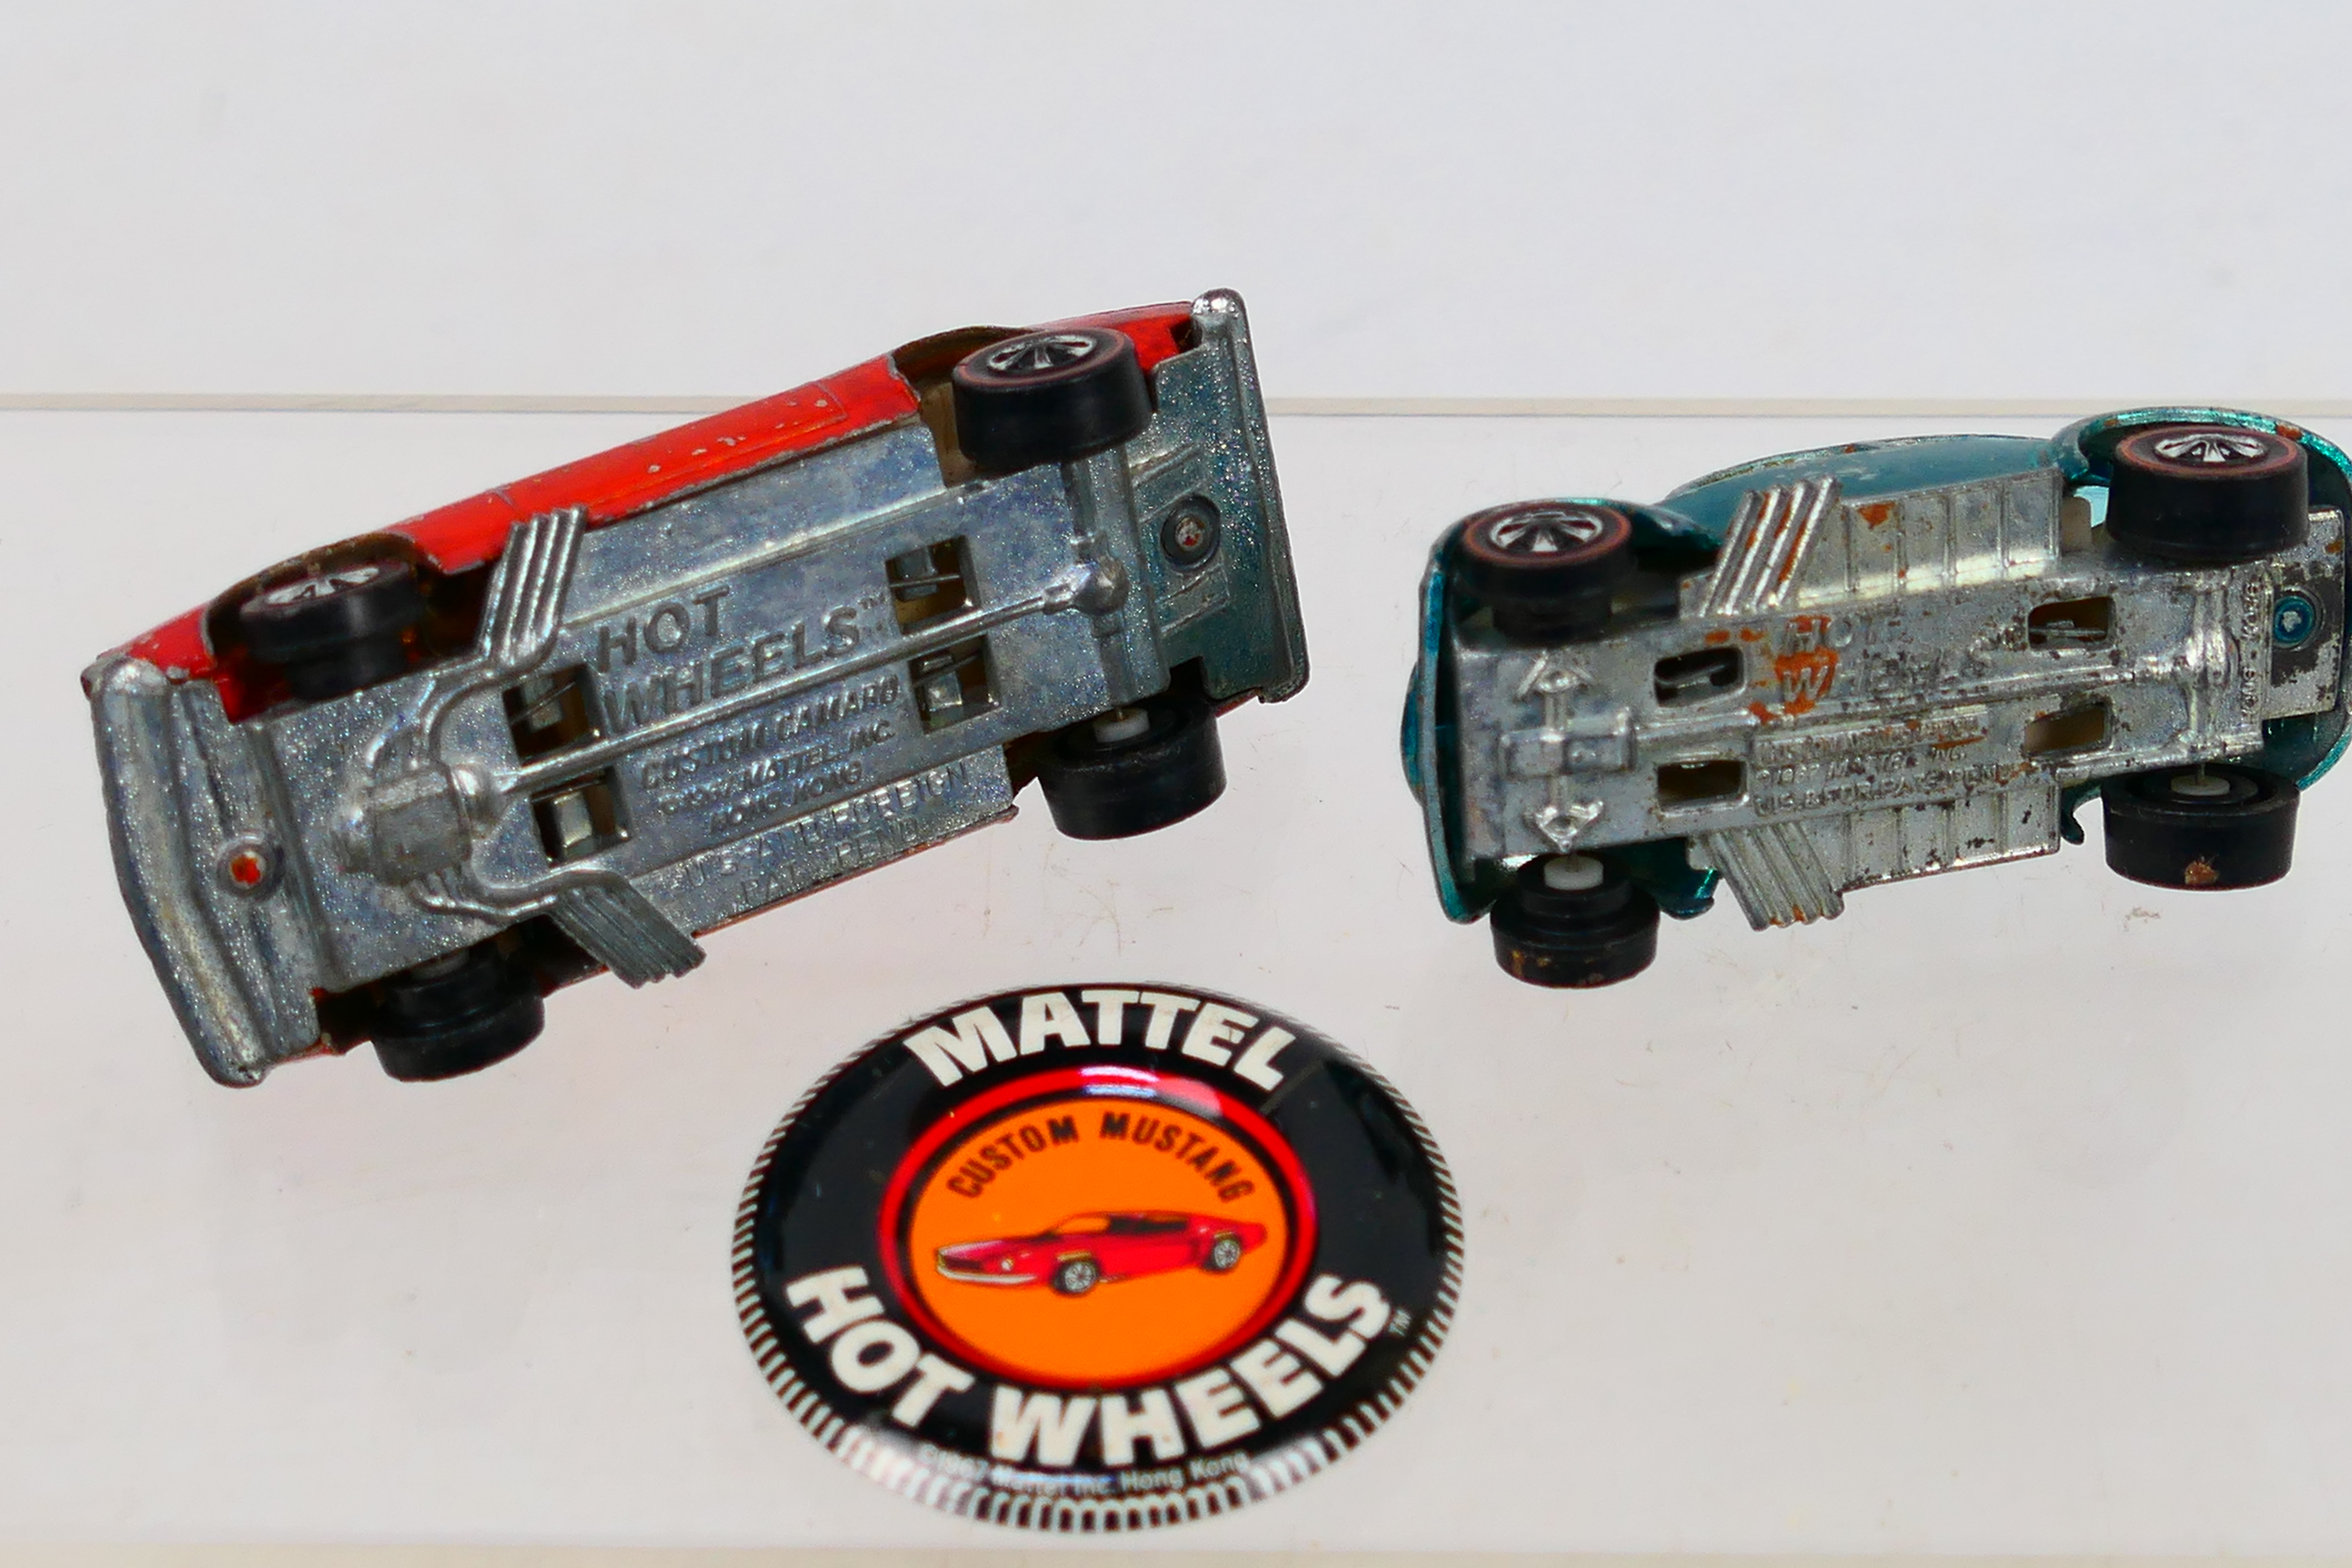 Hot Wheels - Redline. Two loose Redline's and a Mattel Hot Wheels badge. - Image 5 of 5